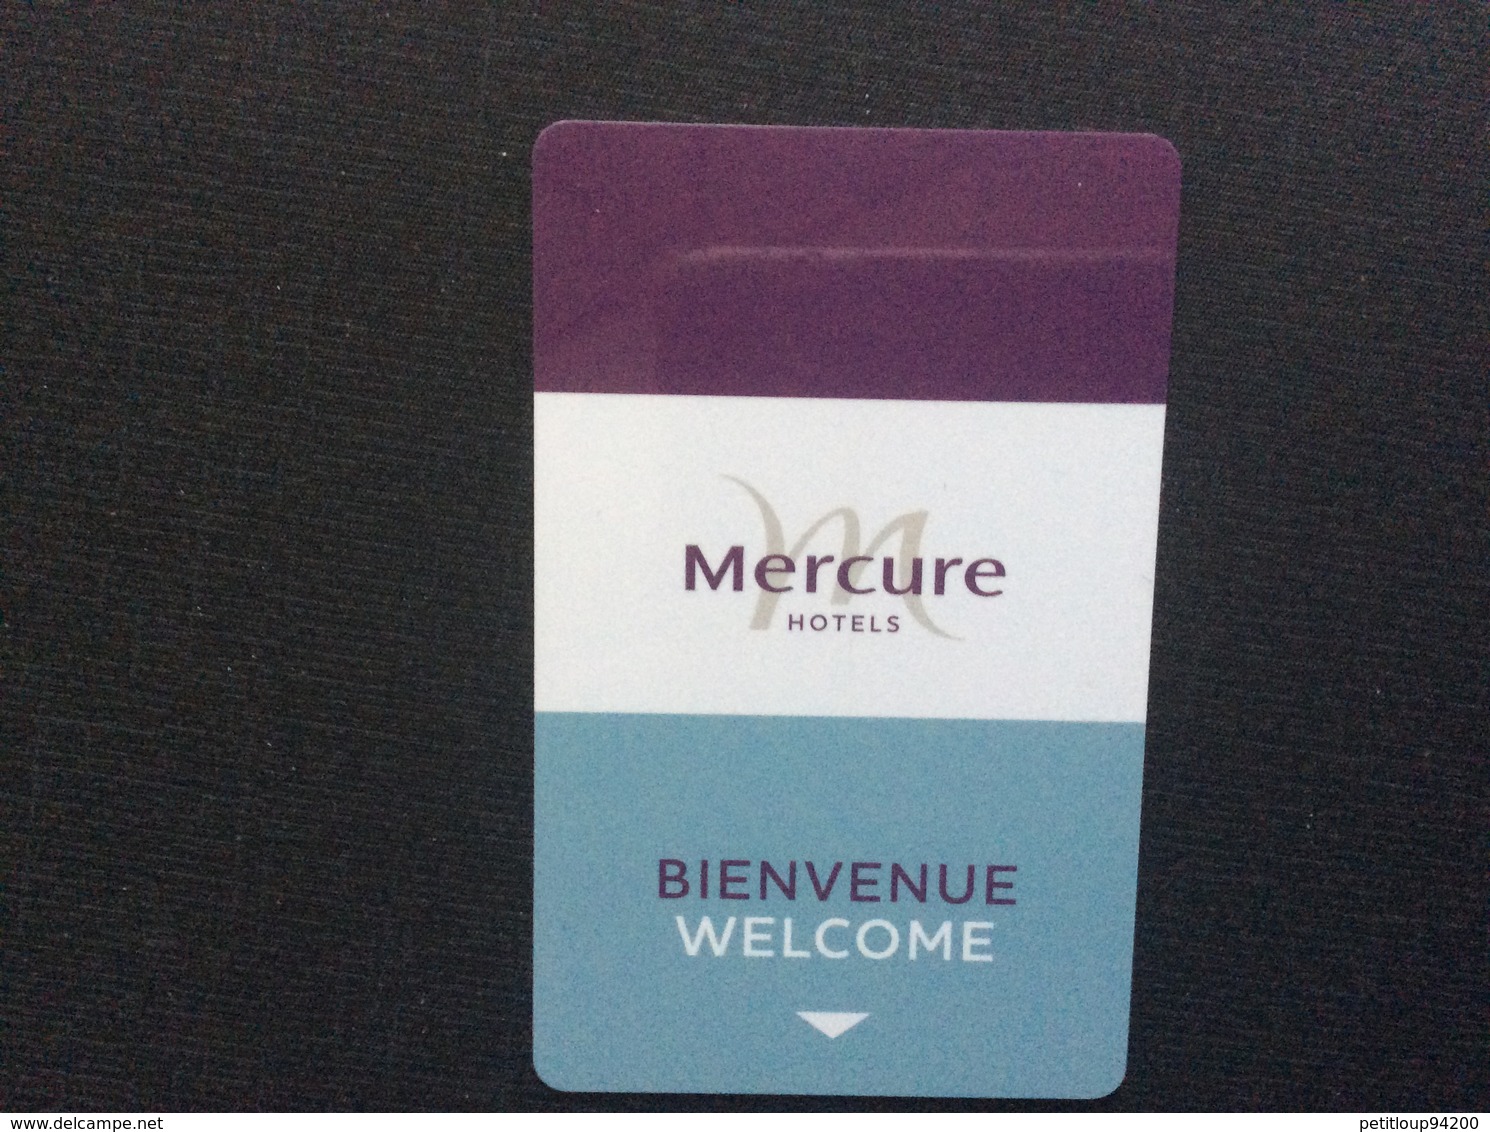 CLE D'HOTEL + POCHETTE  Mercure Hôtel  AFRIQUE Du SUD  SOUTH AFRICA - Hotel Key Cards